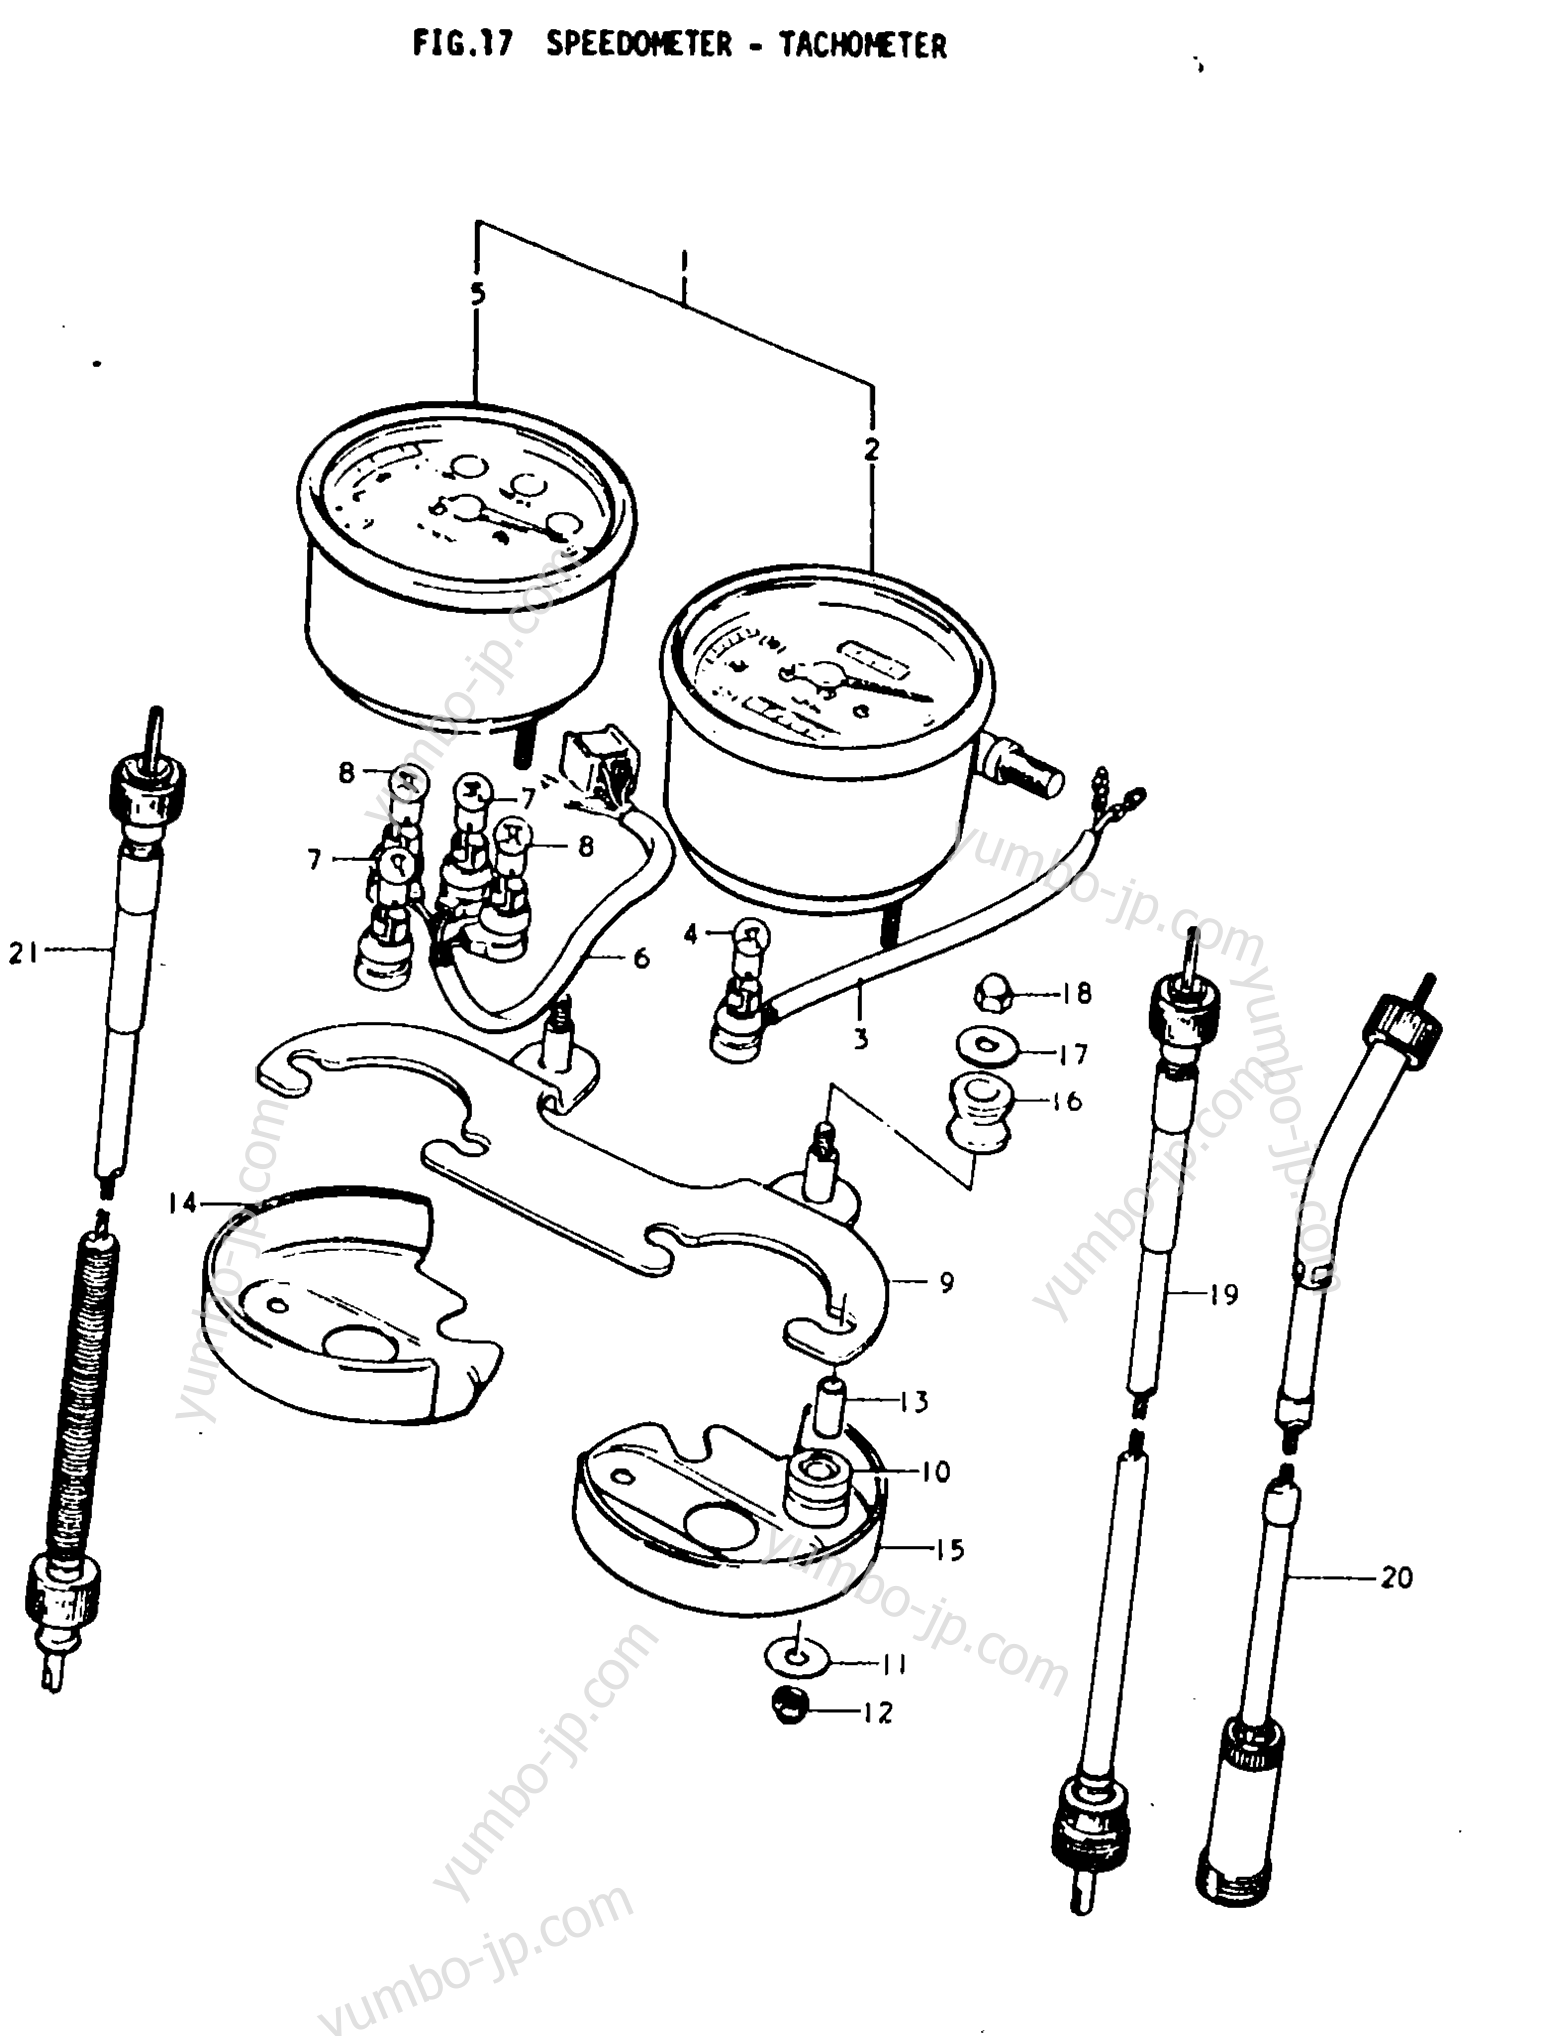 Speedometer - Tachometer for motorcycles SUZUKI TS250 1977 year